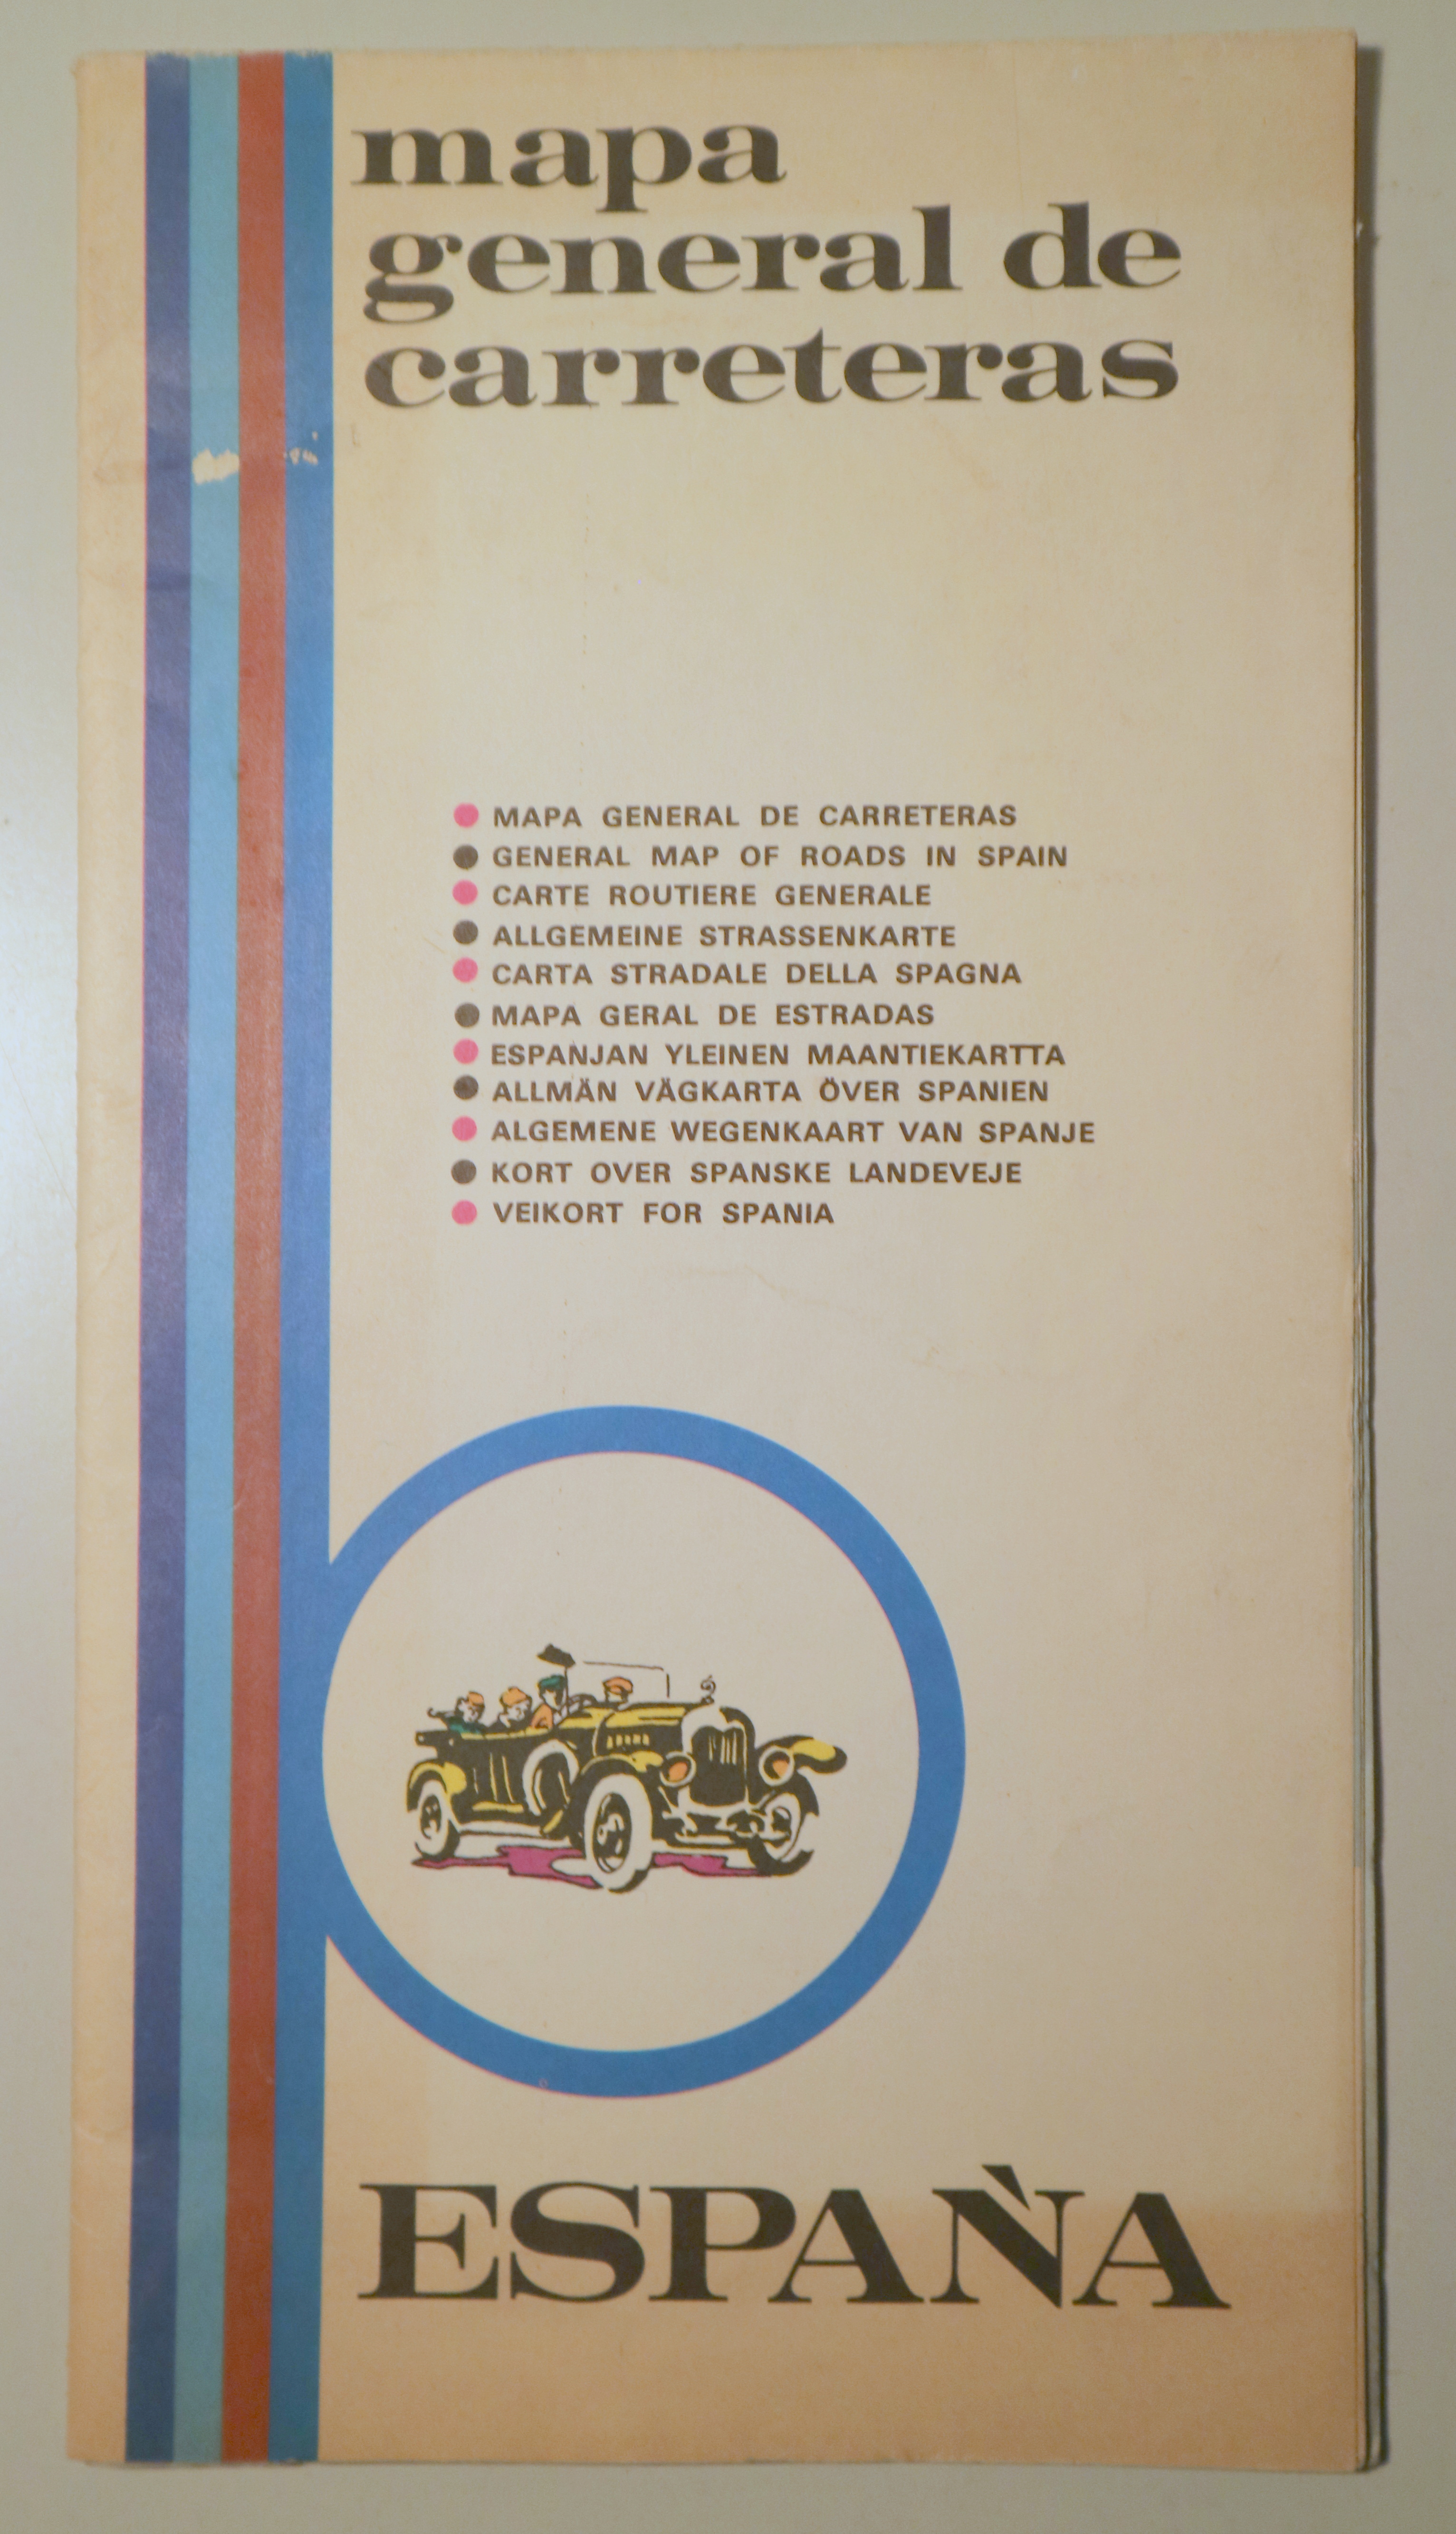 MAPA GENERAL DE CARRETERAS ESPAÑA - Madrid 1970